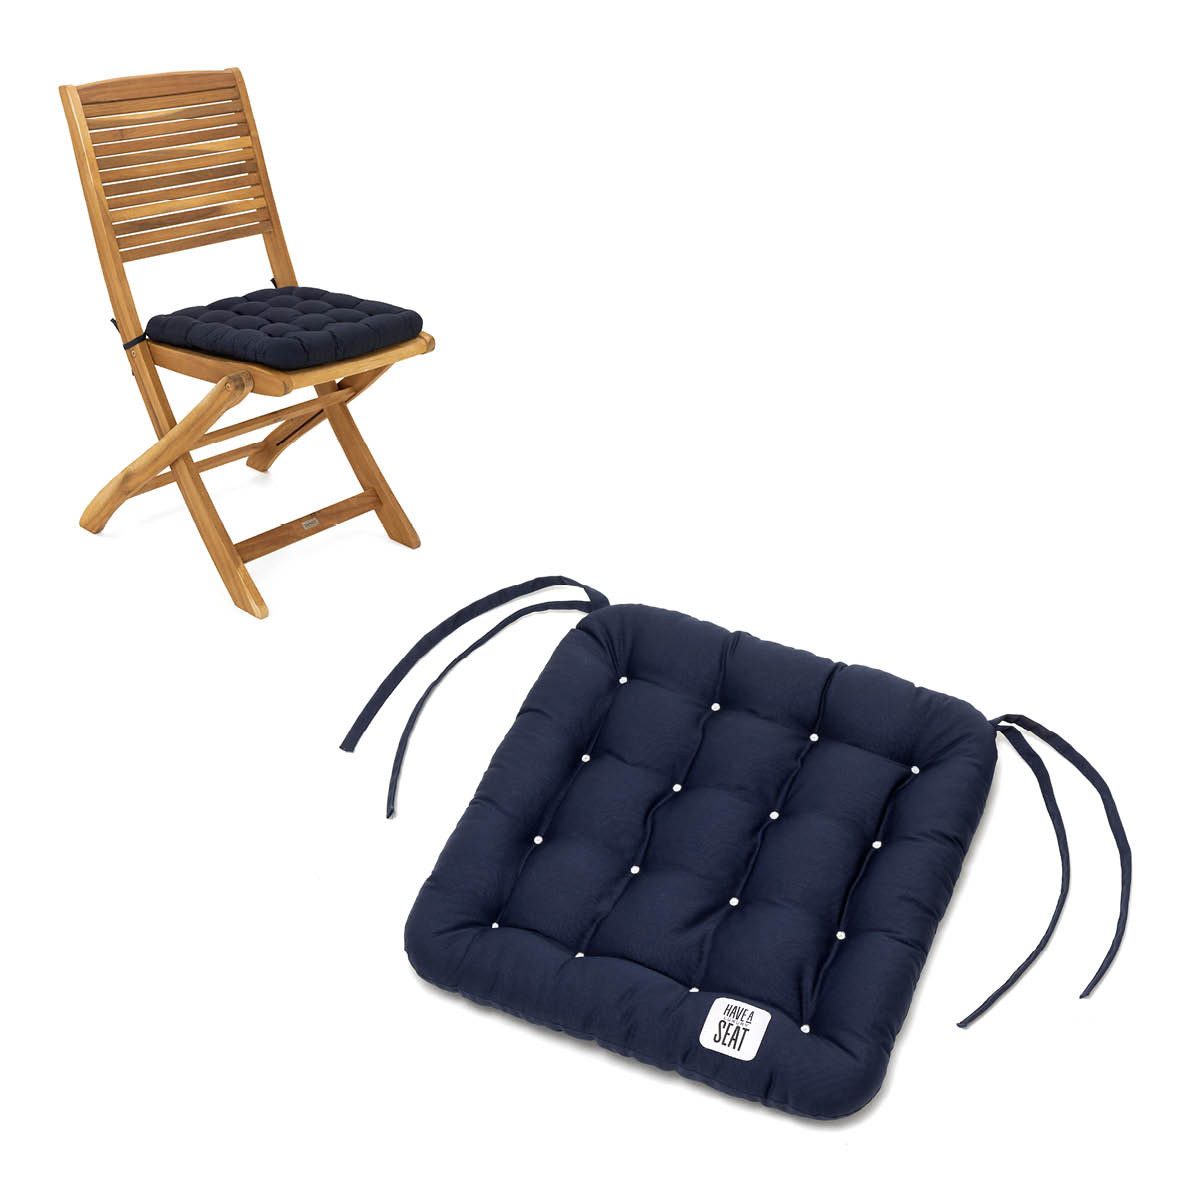 HAVE A SEAT Living Stuhlkissen - bequeme Sitzkissen 40x40 cm Indoor / Outdoor - Premium Sitzauflage, orthopädisch, wetterfest, UV-Schutz (8/10), komplett waschbar bis 95°C